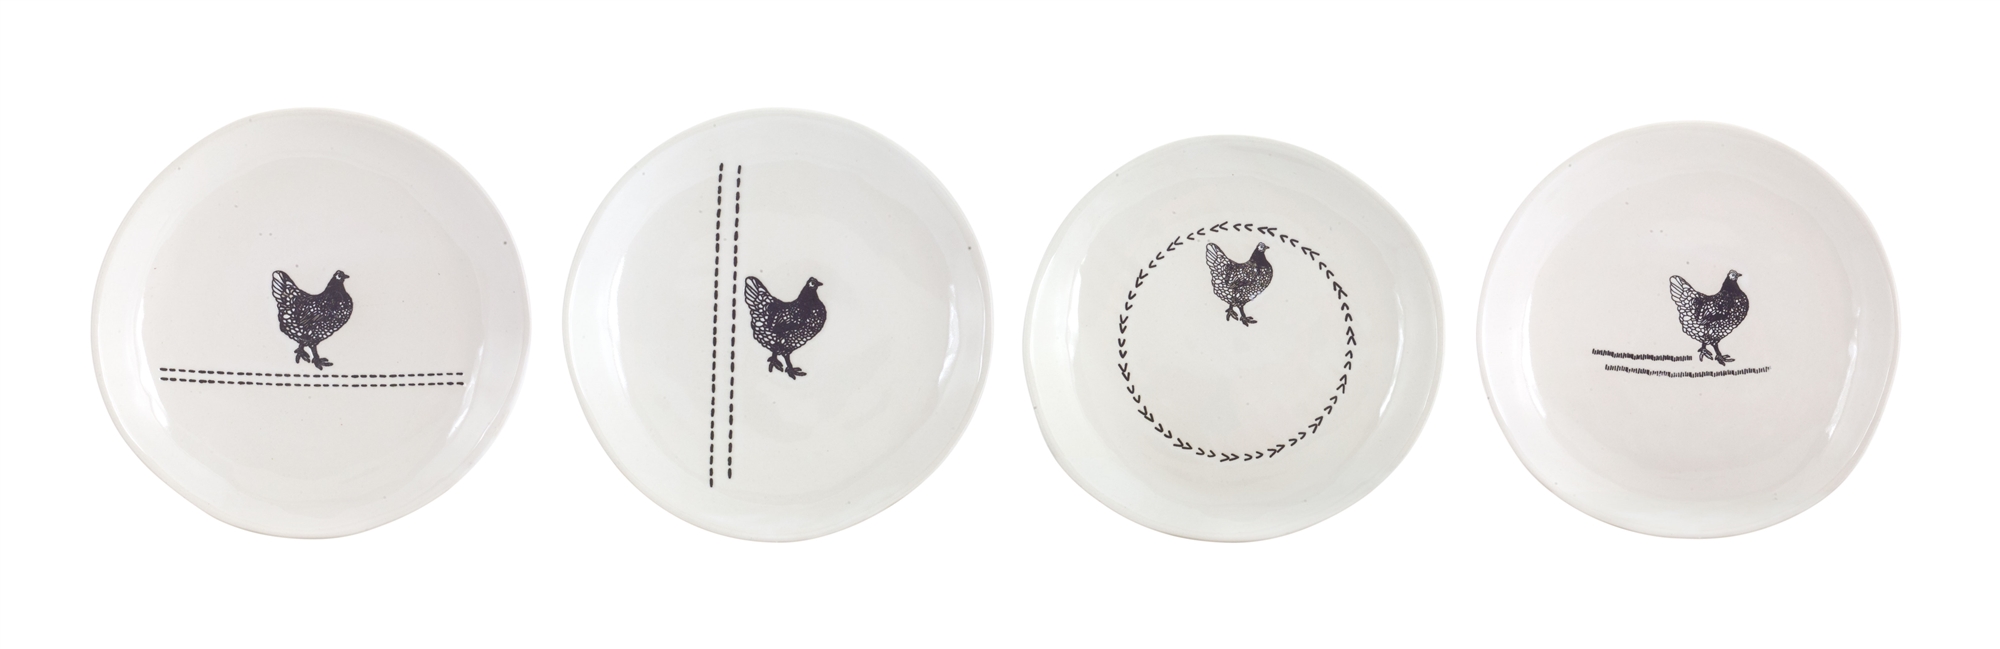 Chicken Plate (Set of 8) 6.5"D Stoneware